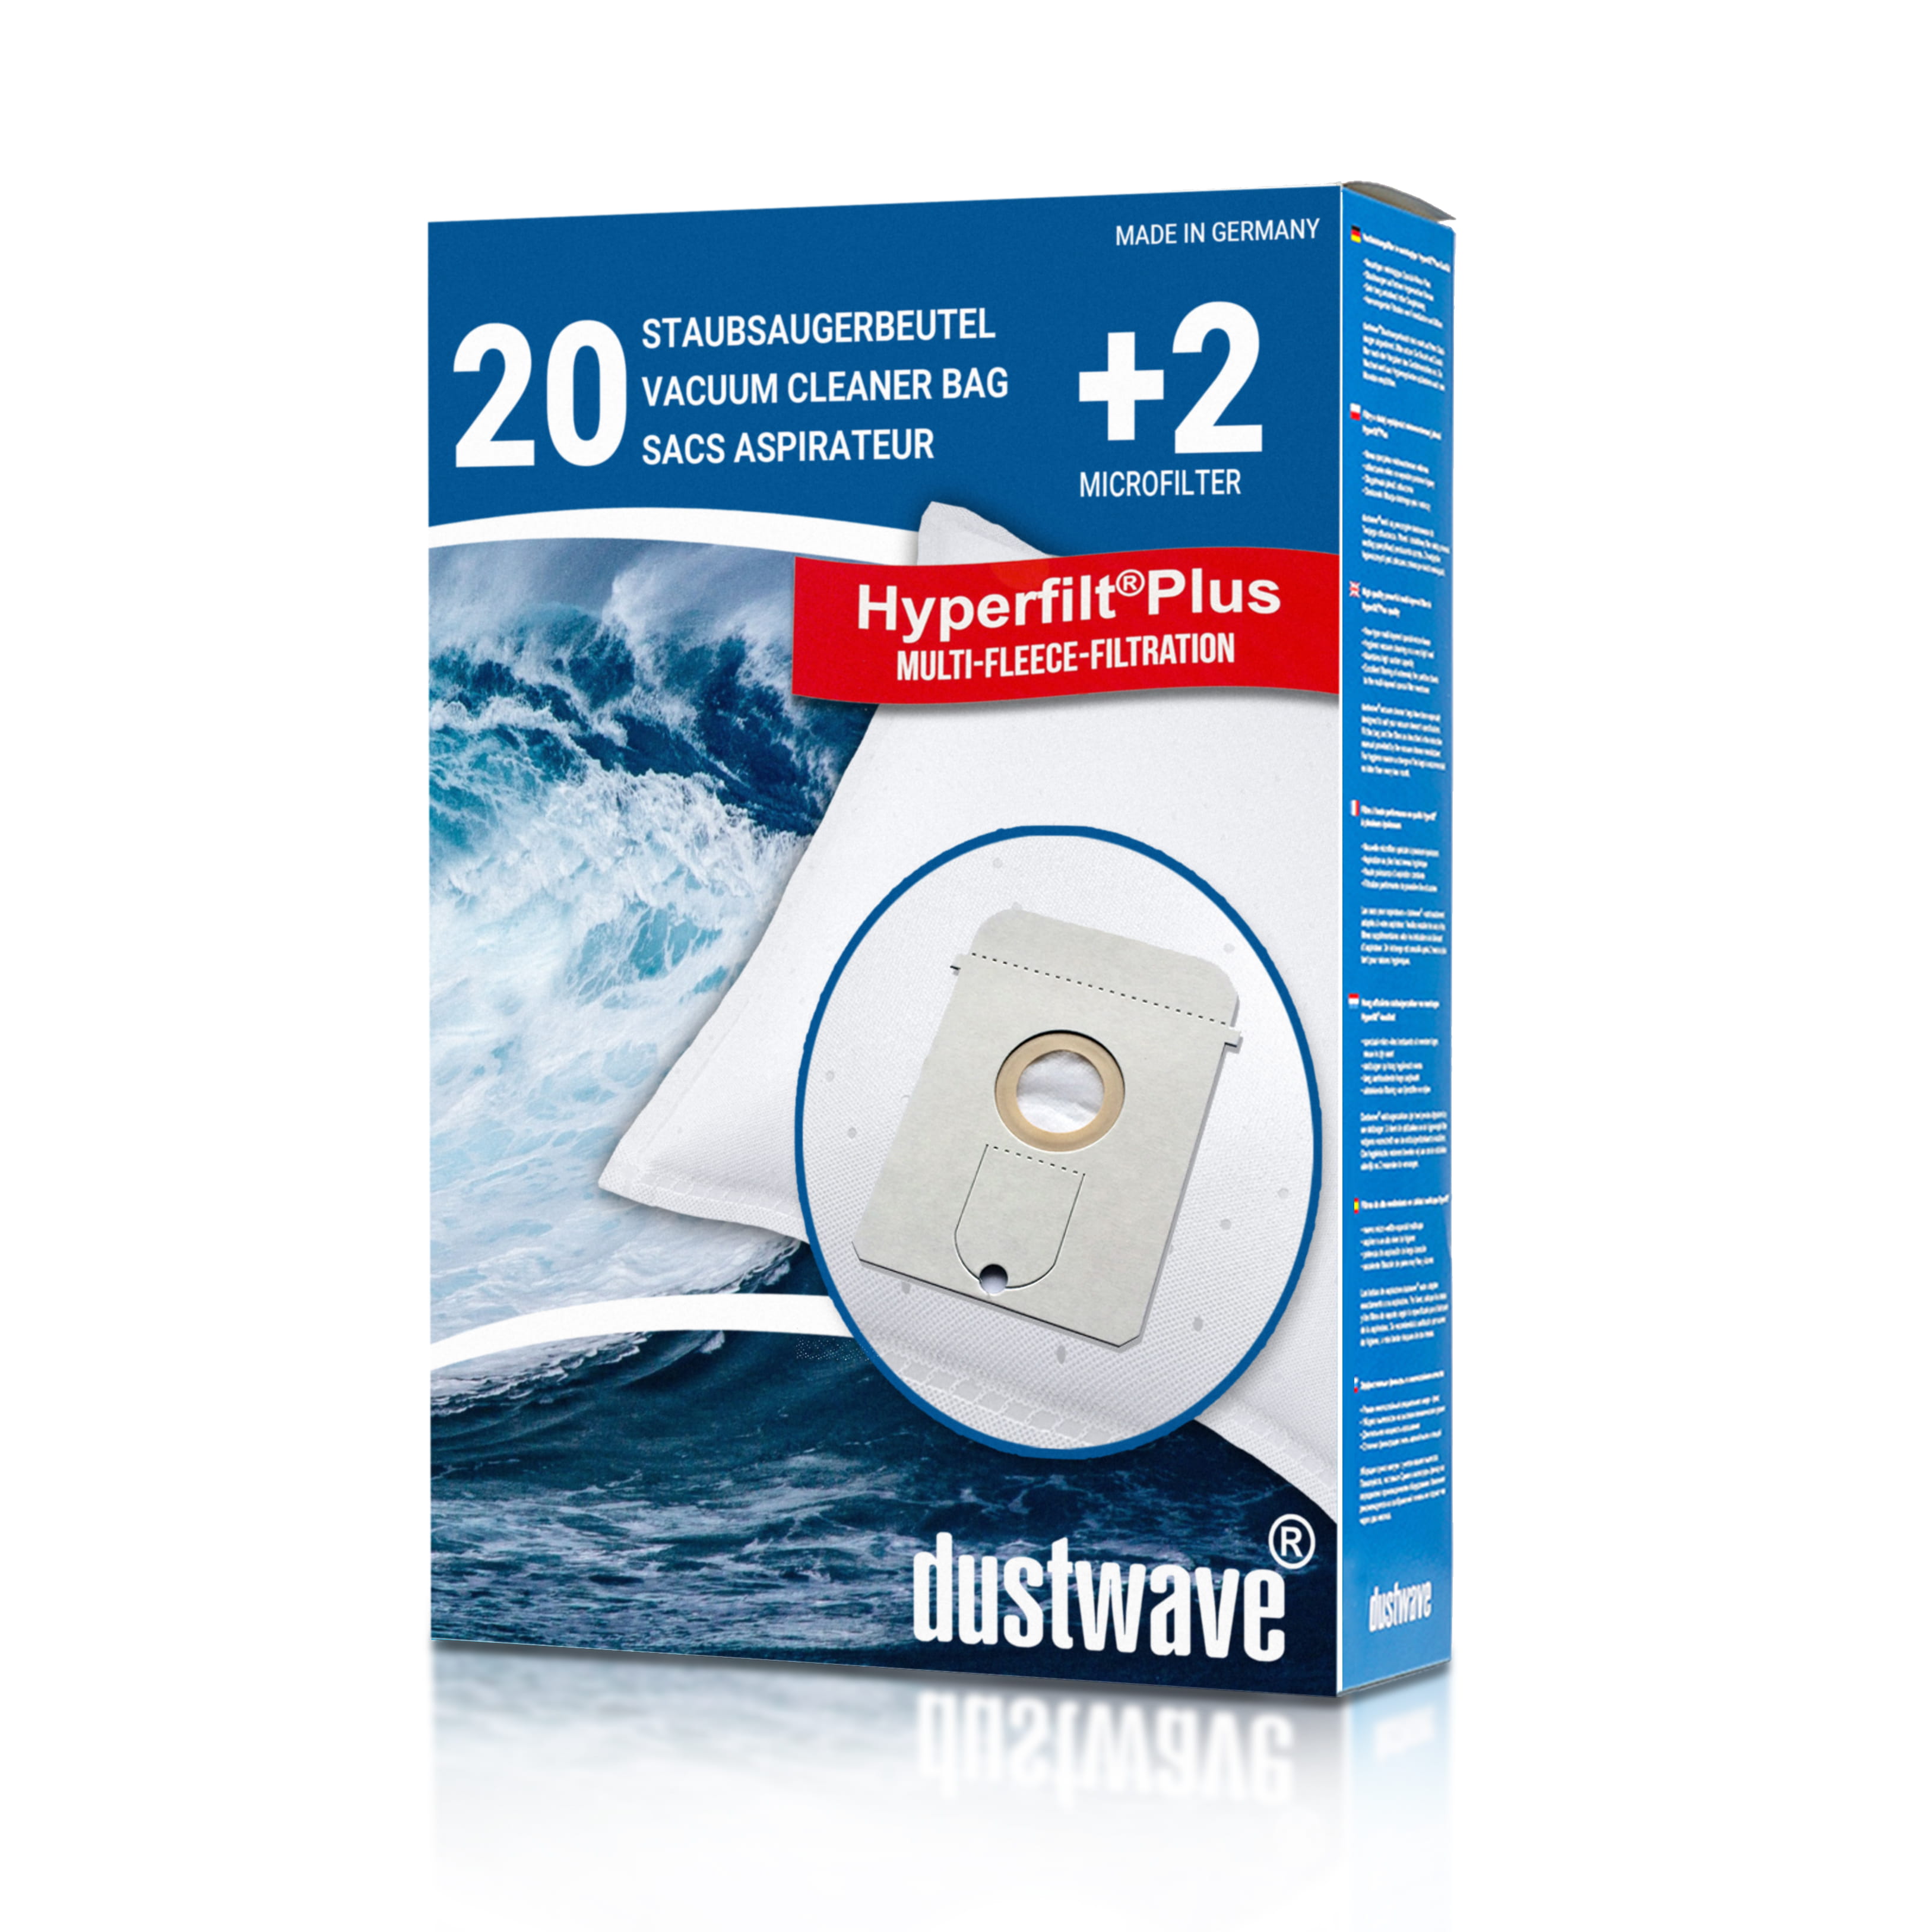 Dustwave® 20 Staubsaugerbeutel für AquaPur AE 800 - hocheffizient, mehrlagiges Mikrovlies mit Hygieneverschluss - Made in Germany